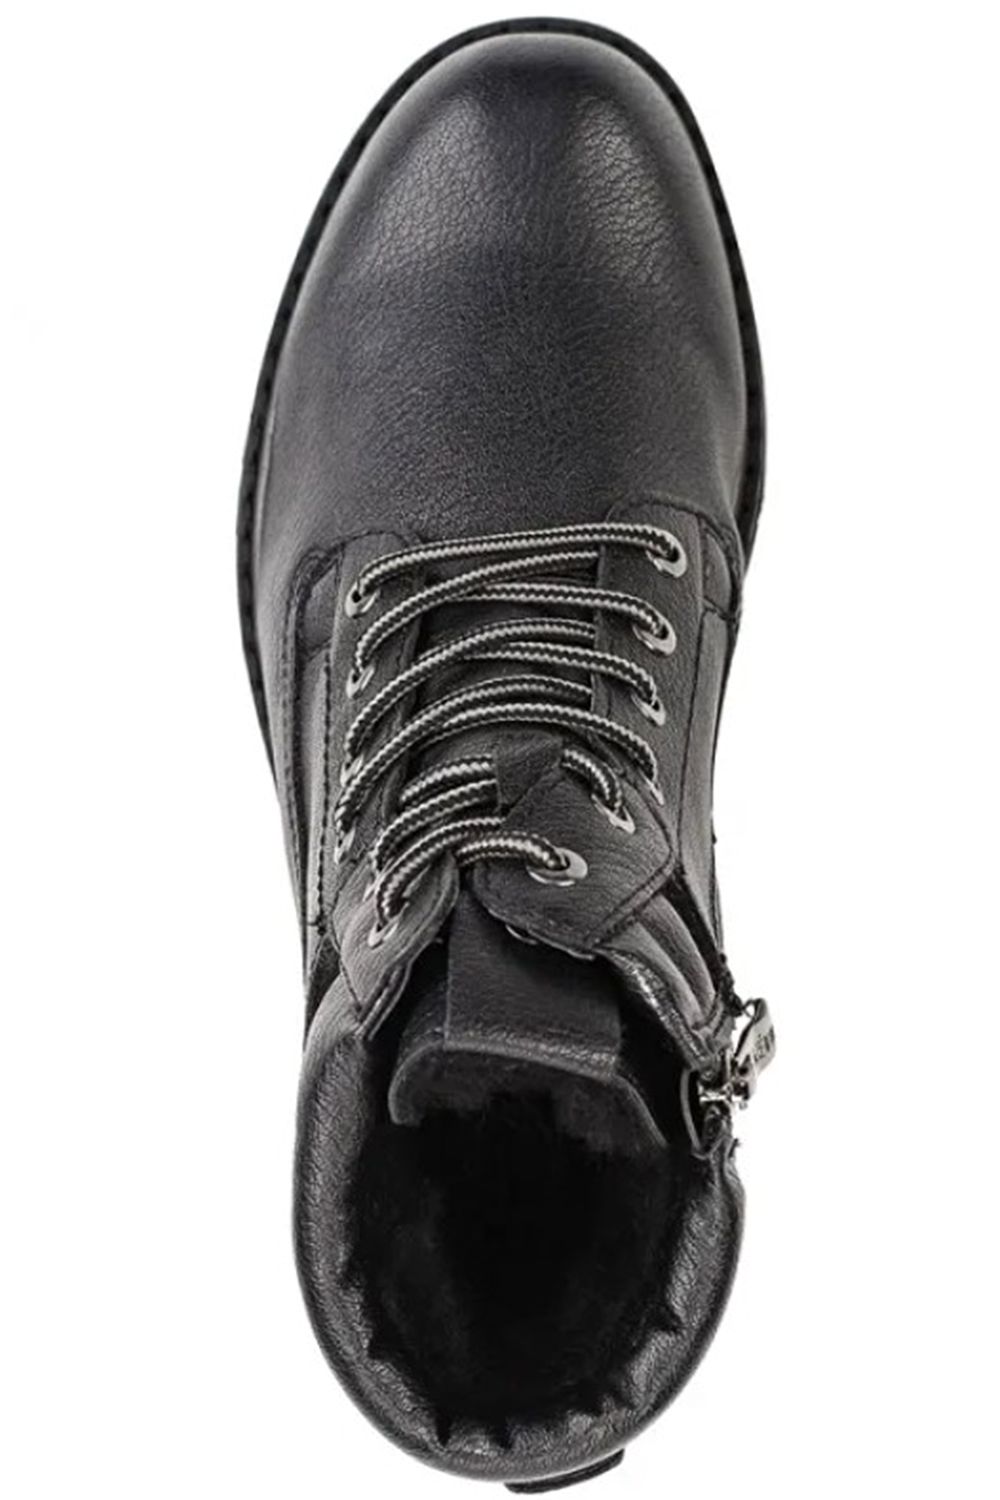 Ботинки Keddo, размер 39, цвет черный 598139/06-06 - фото 2